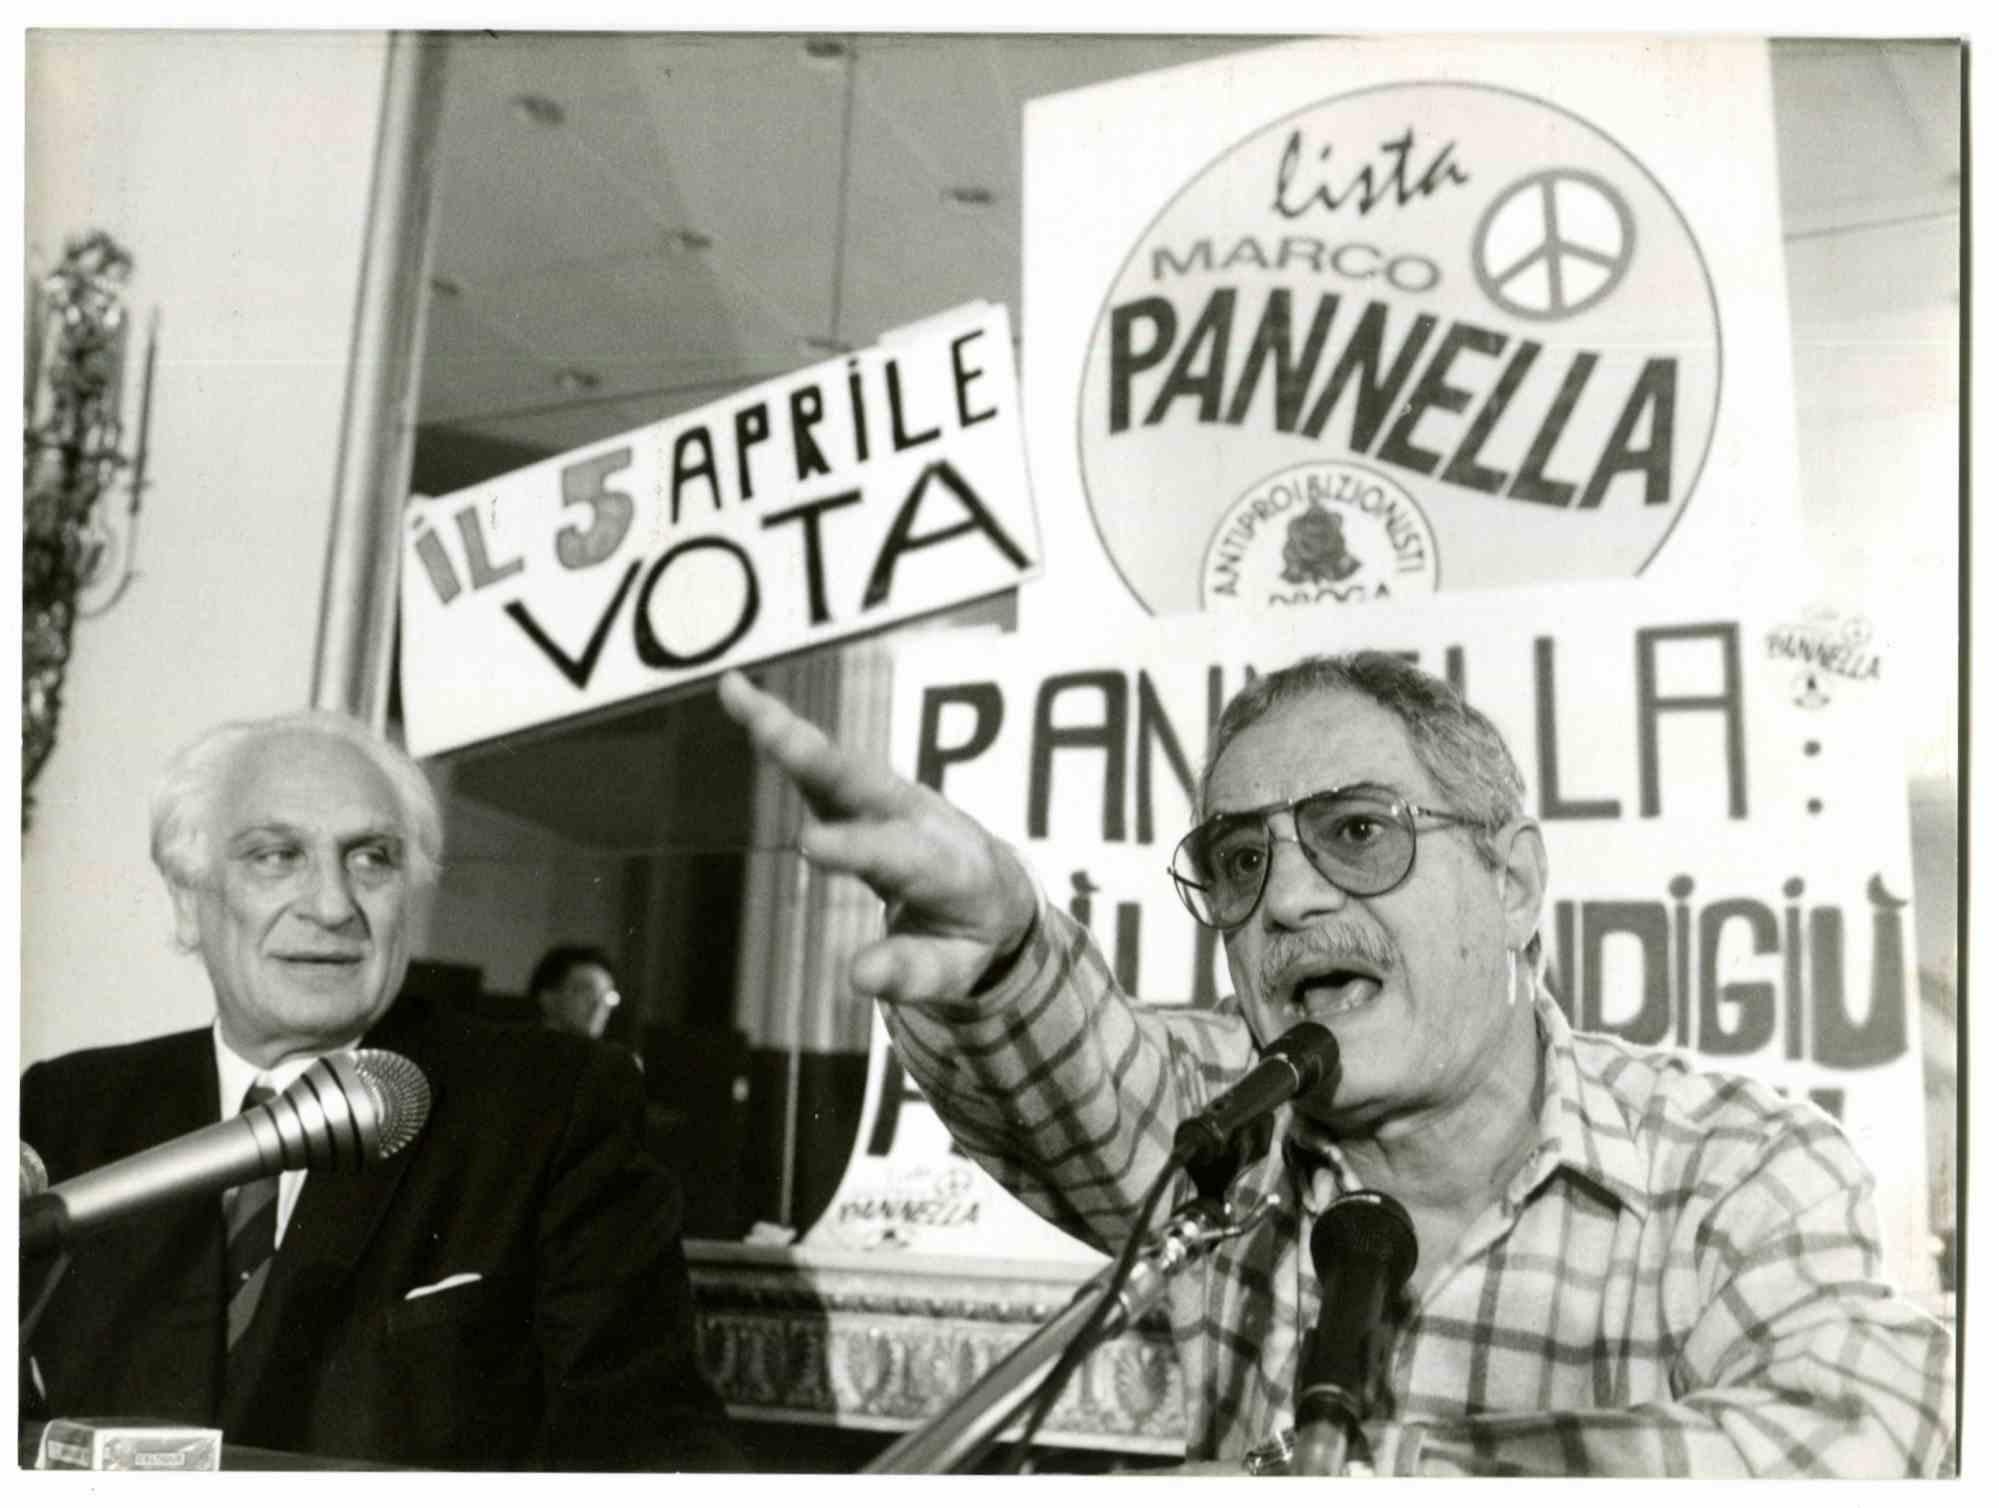 Nino Manfredi und Marco Pannella - 1970er Jahre